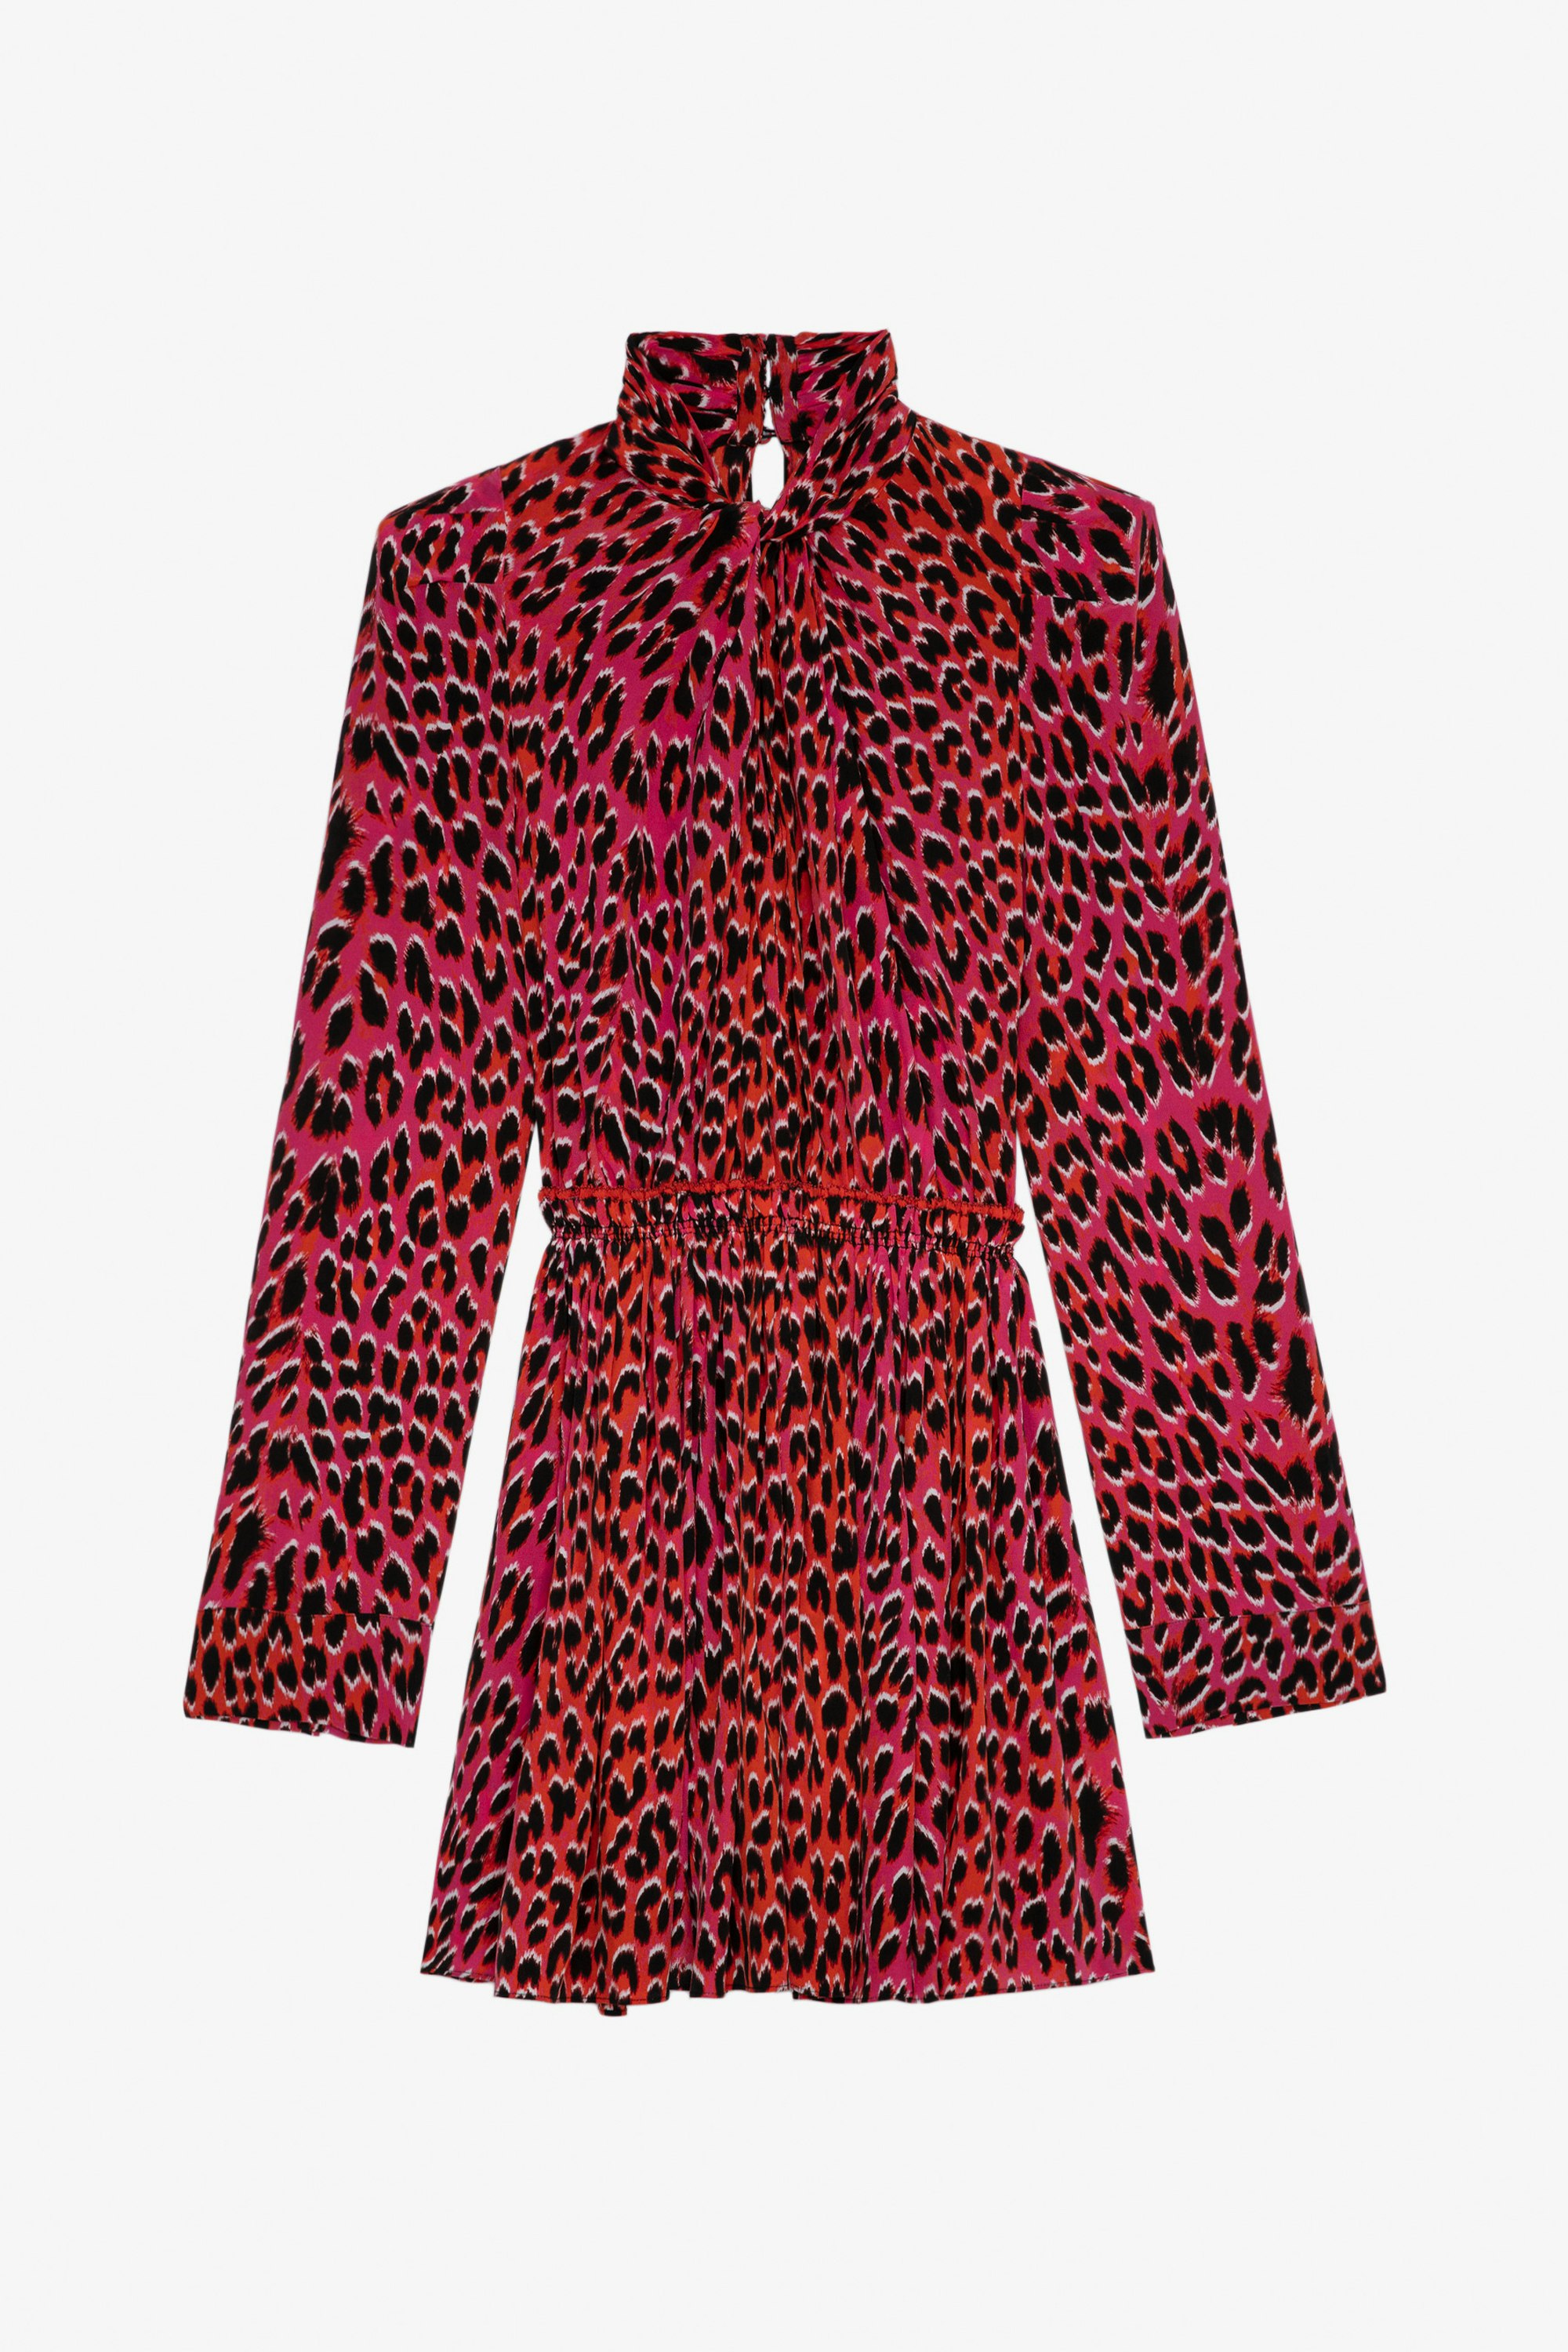 Robe Ryde Léopard Soie - Robe courte en soie rose imprimé léopard à col lavalière.